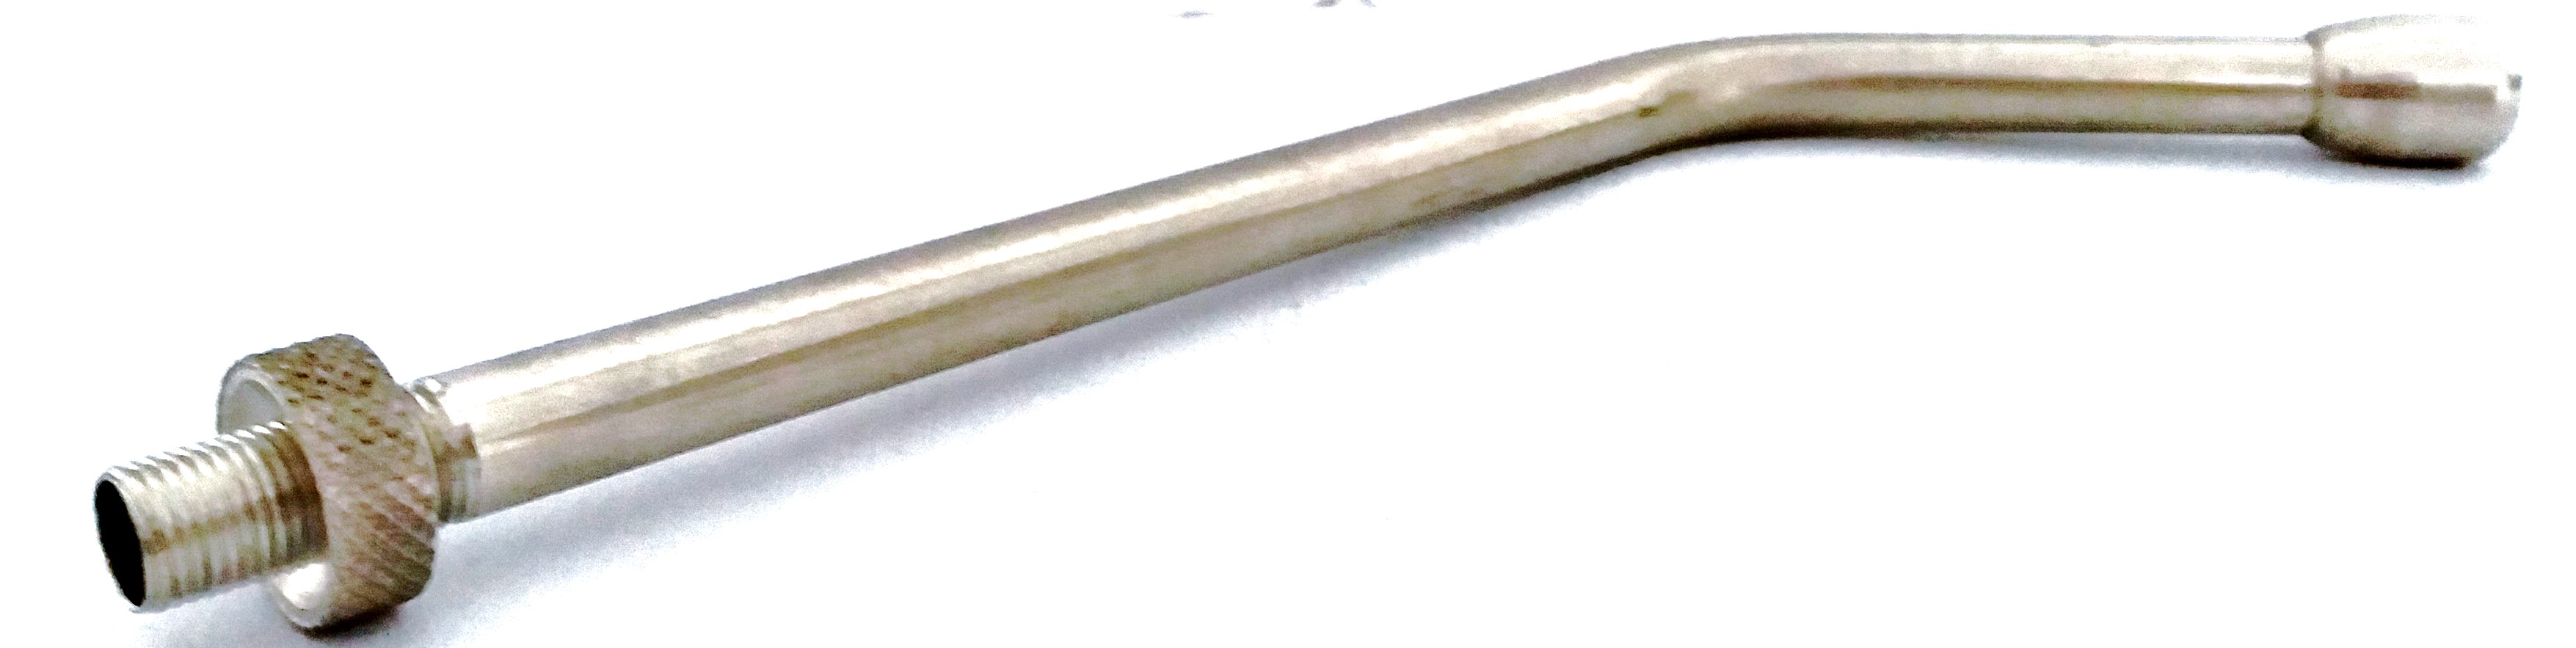 Ρύγχος μεταλλικό για drencher, 20 cm